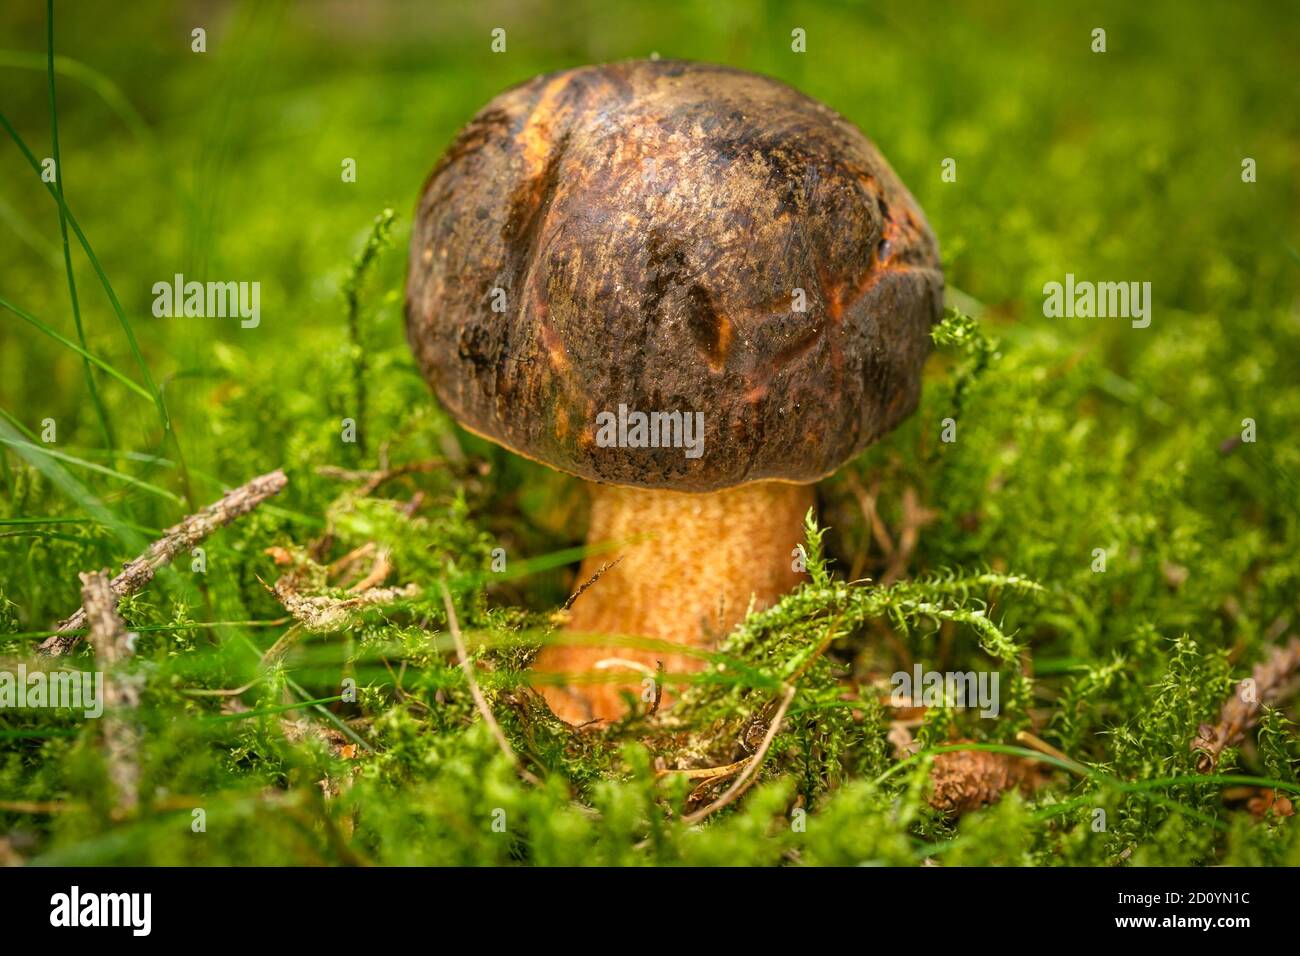 Un fungo di boletus commestibile con testa marrone e gambo giallo che cresce in muschio verde fresco in una foresta. Foto Stock